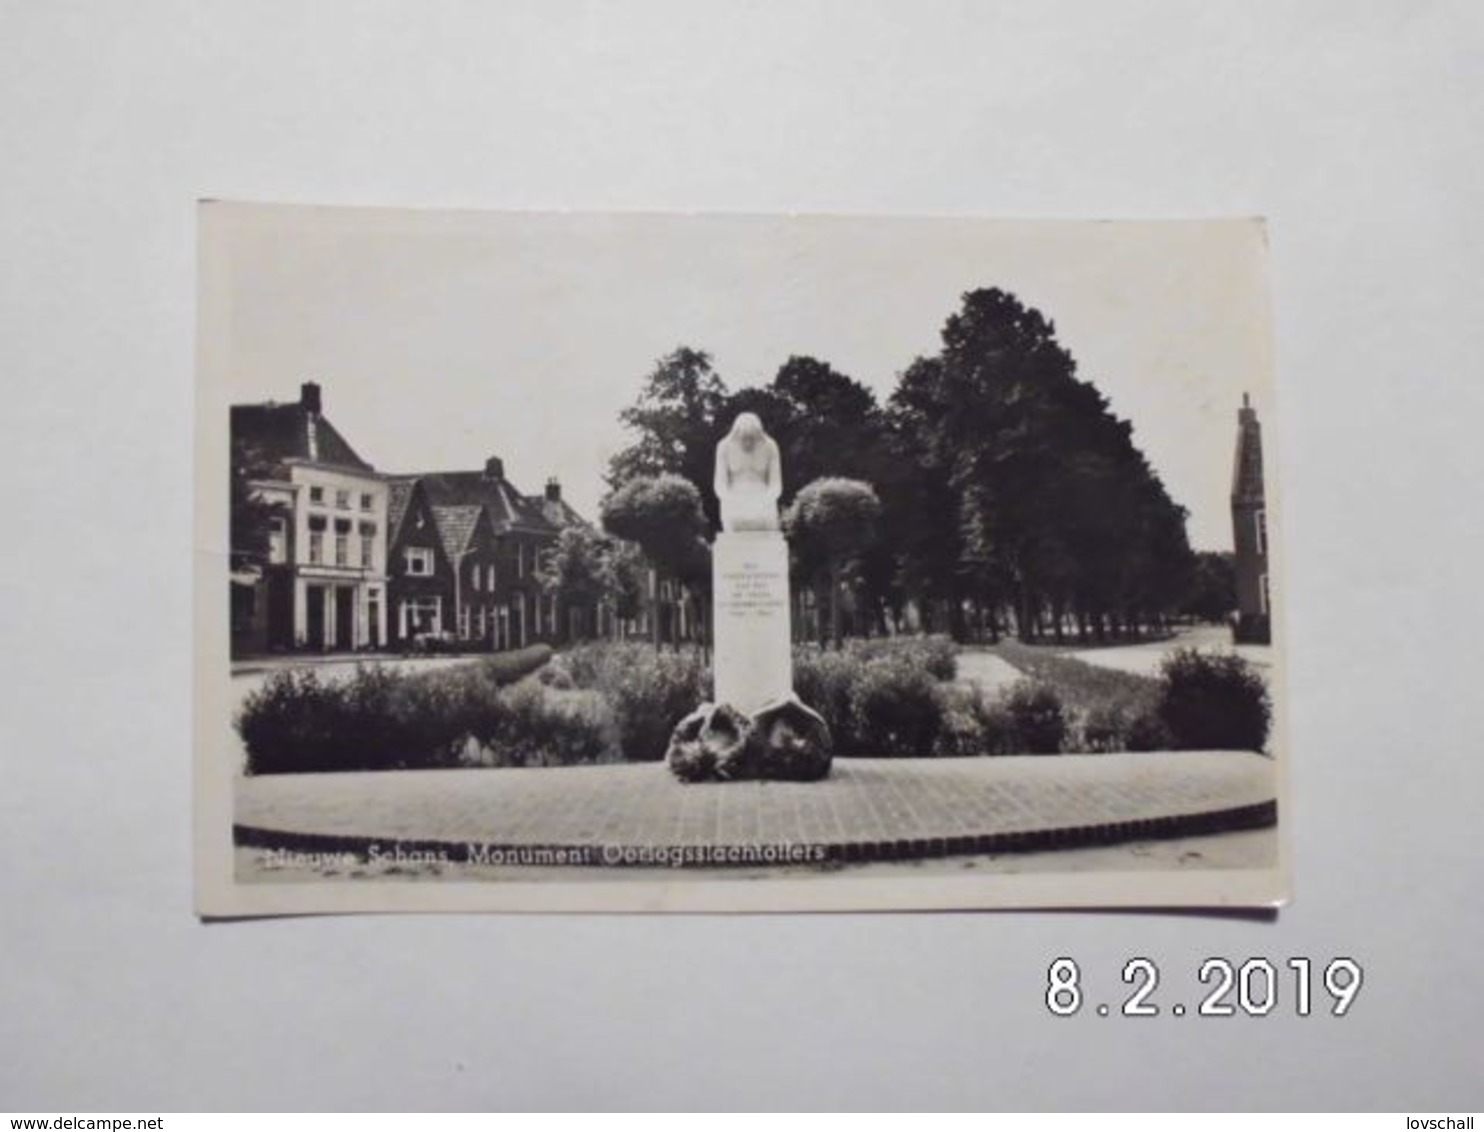 Nieuveschans. - Monument Oorlogsslachtoffers. (15 - 7 - 1952) - Nieuweschans